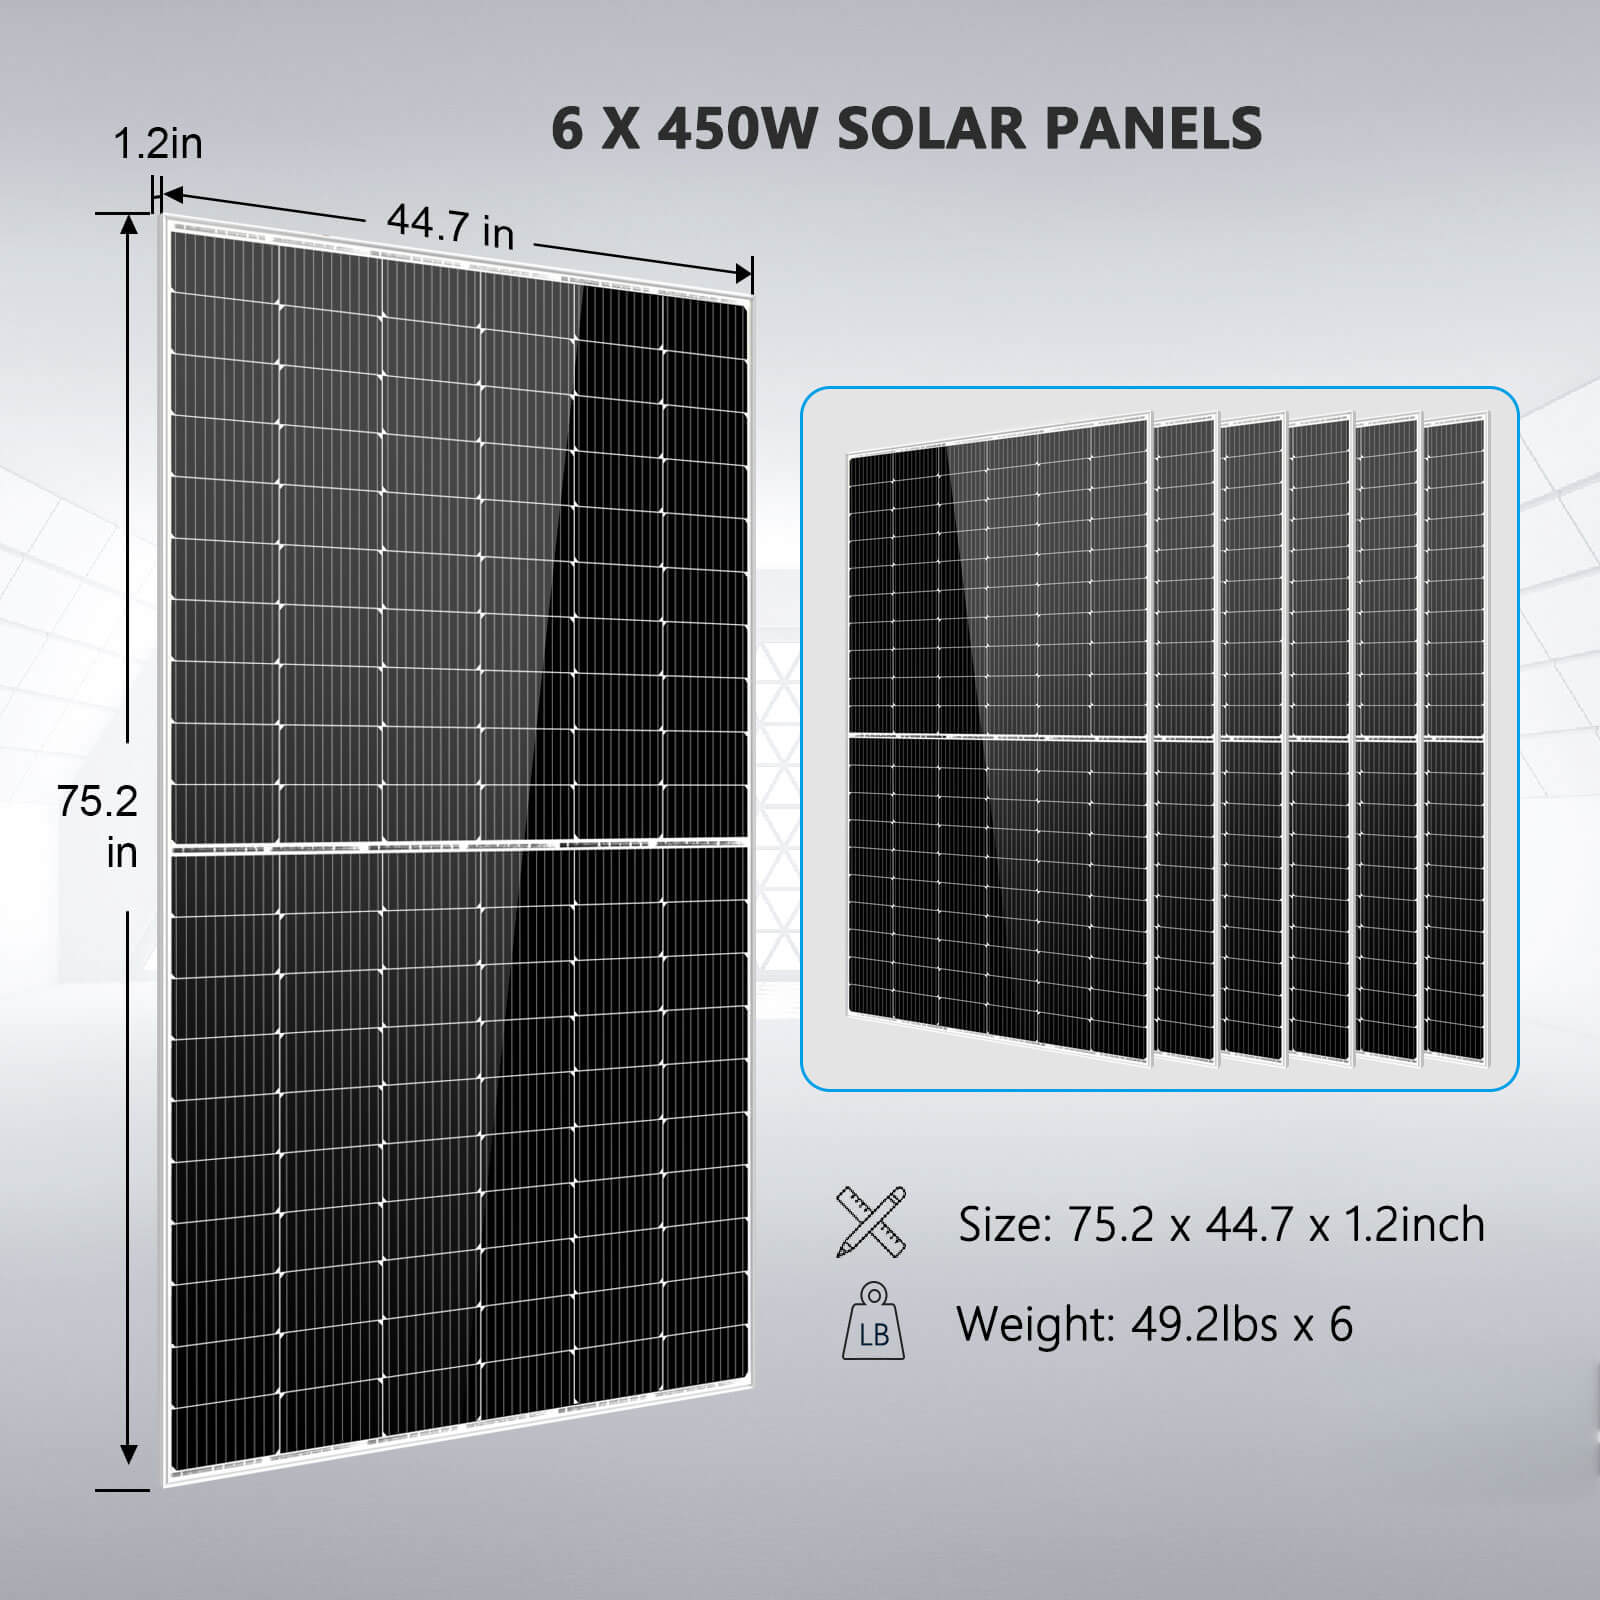 Kit solar con bateria 5kW 19kWh/dia Solis - Chm Energía